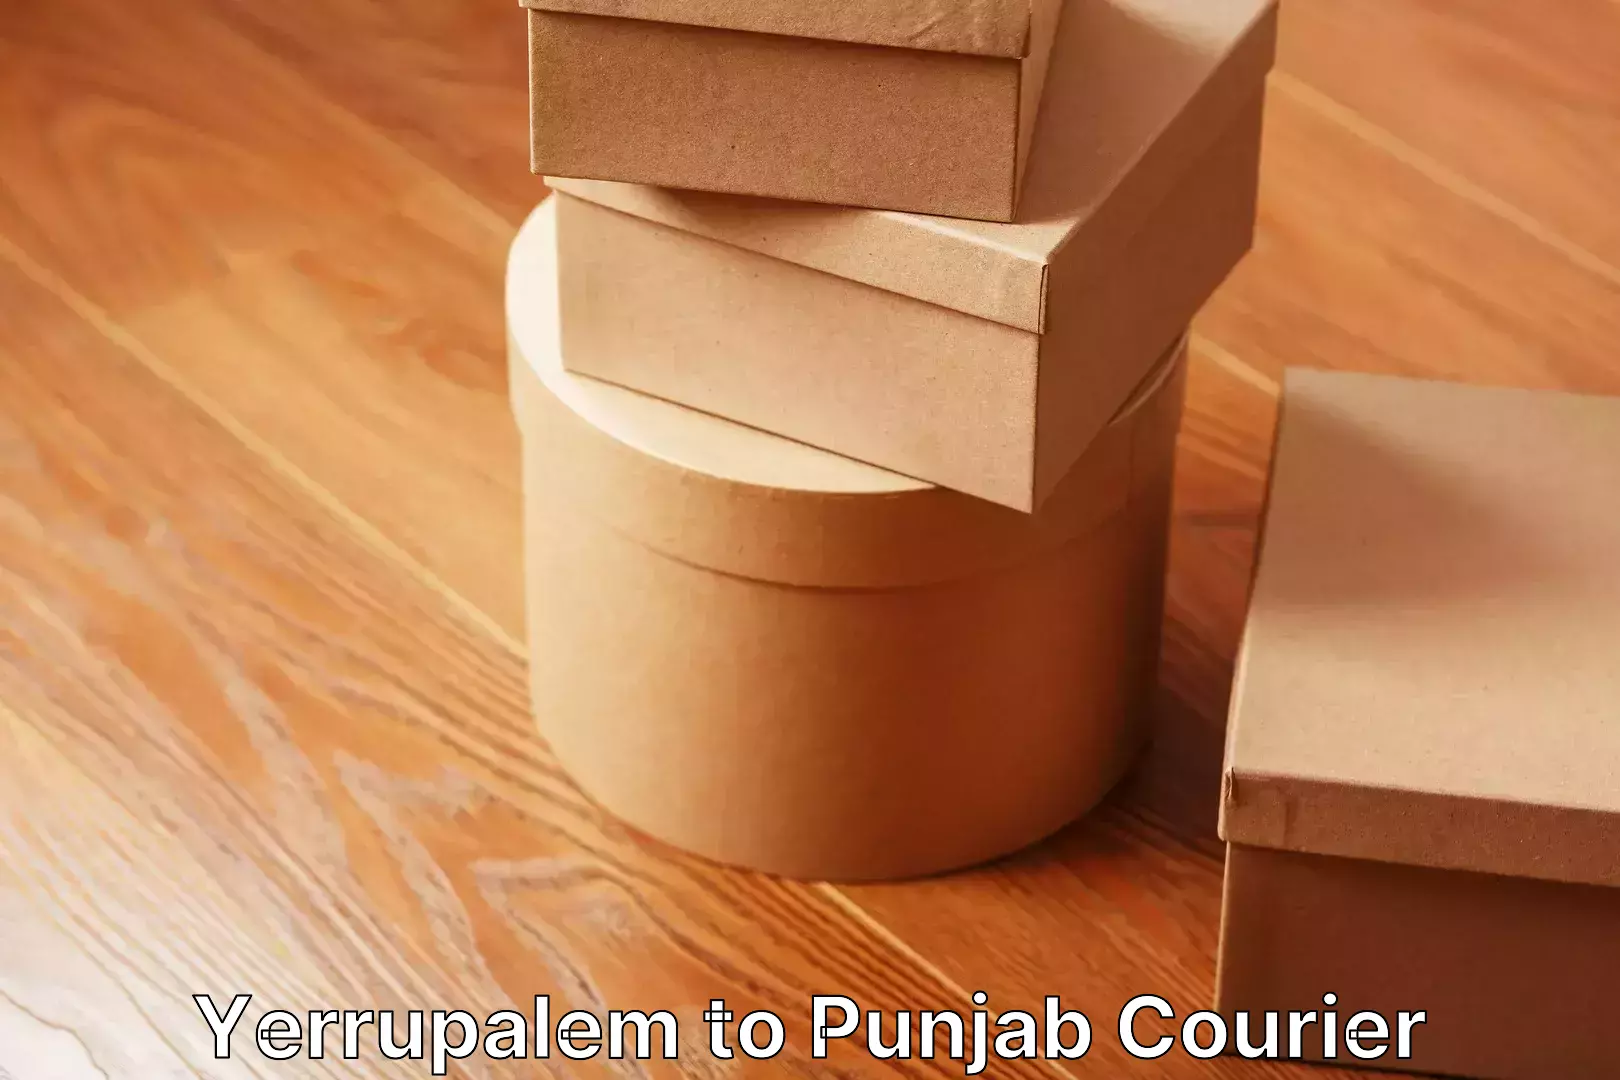 Furniture moving experts Yerrupalem to Punjab